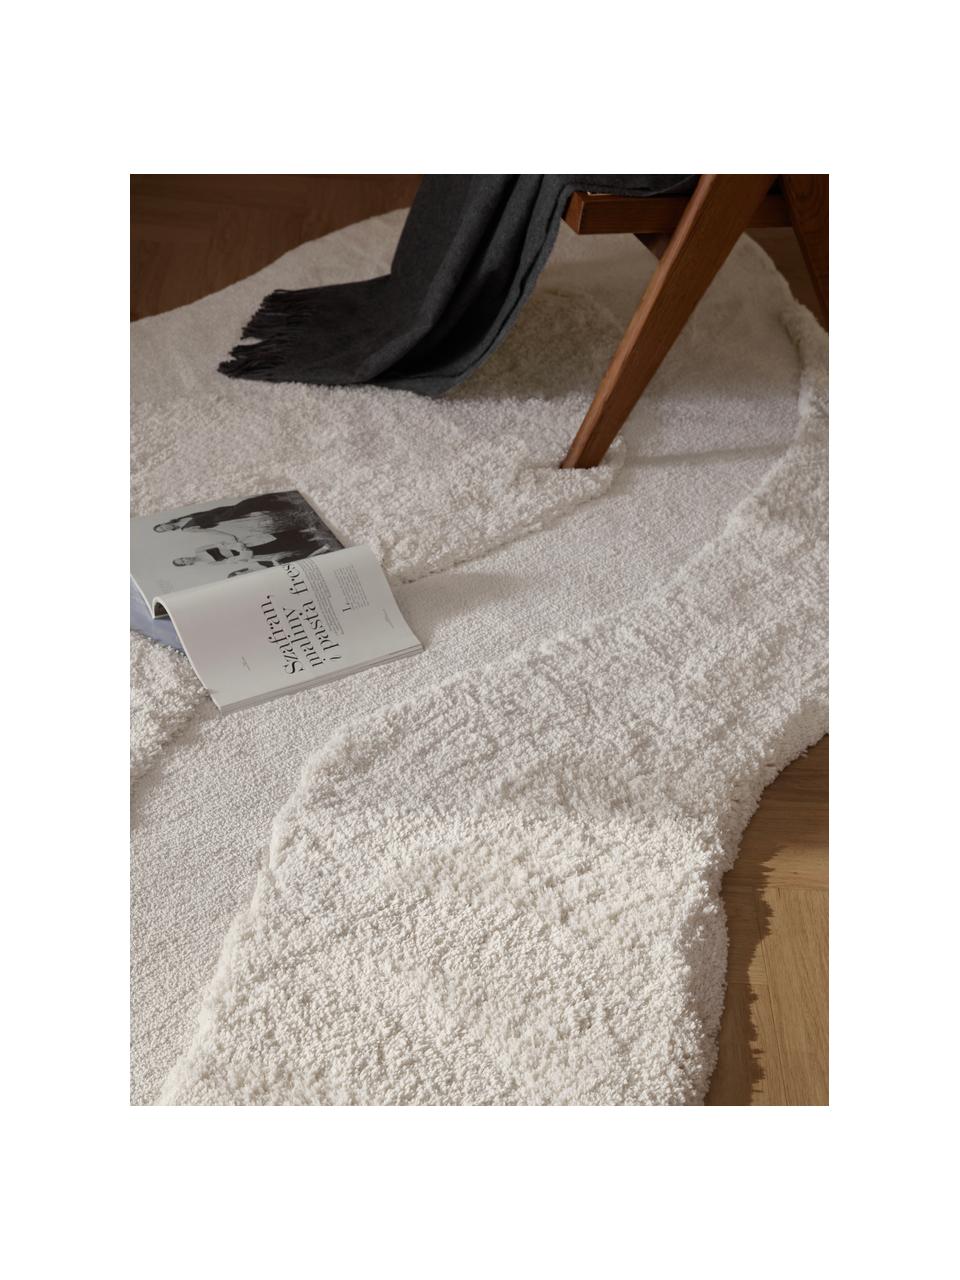 Flauschiger Teppich Kyla in organischer Form, Weiss, B 160 x L 230 cm (Grösse M)